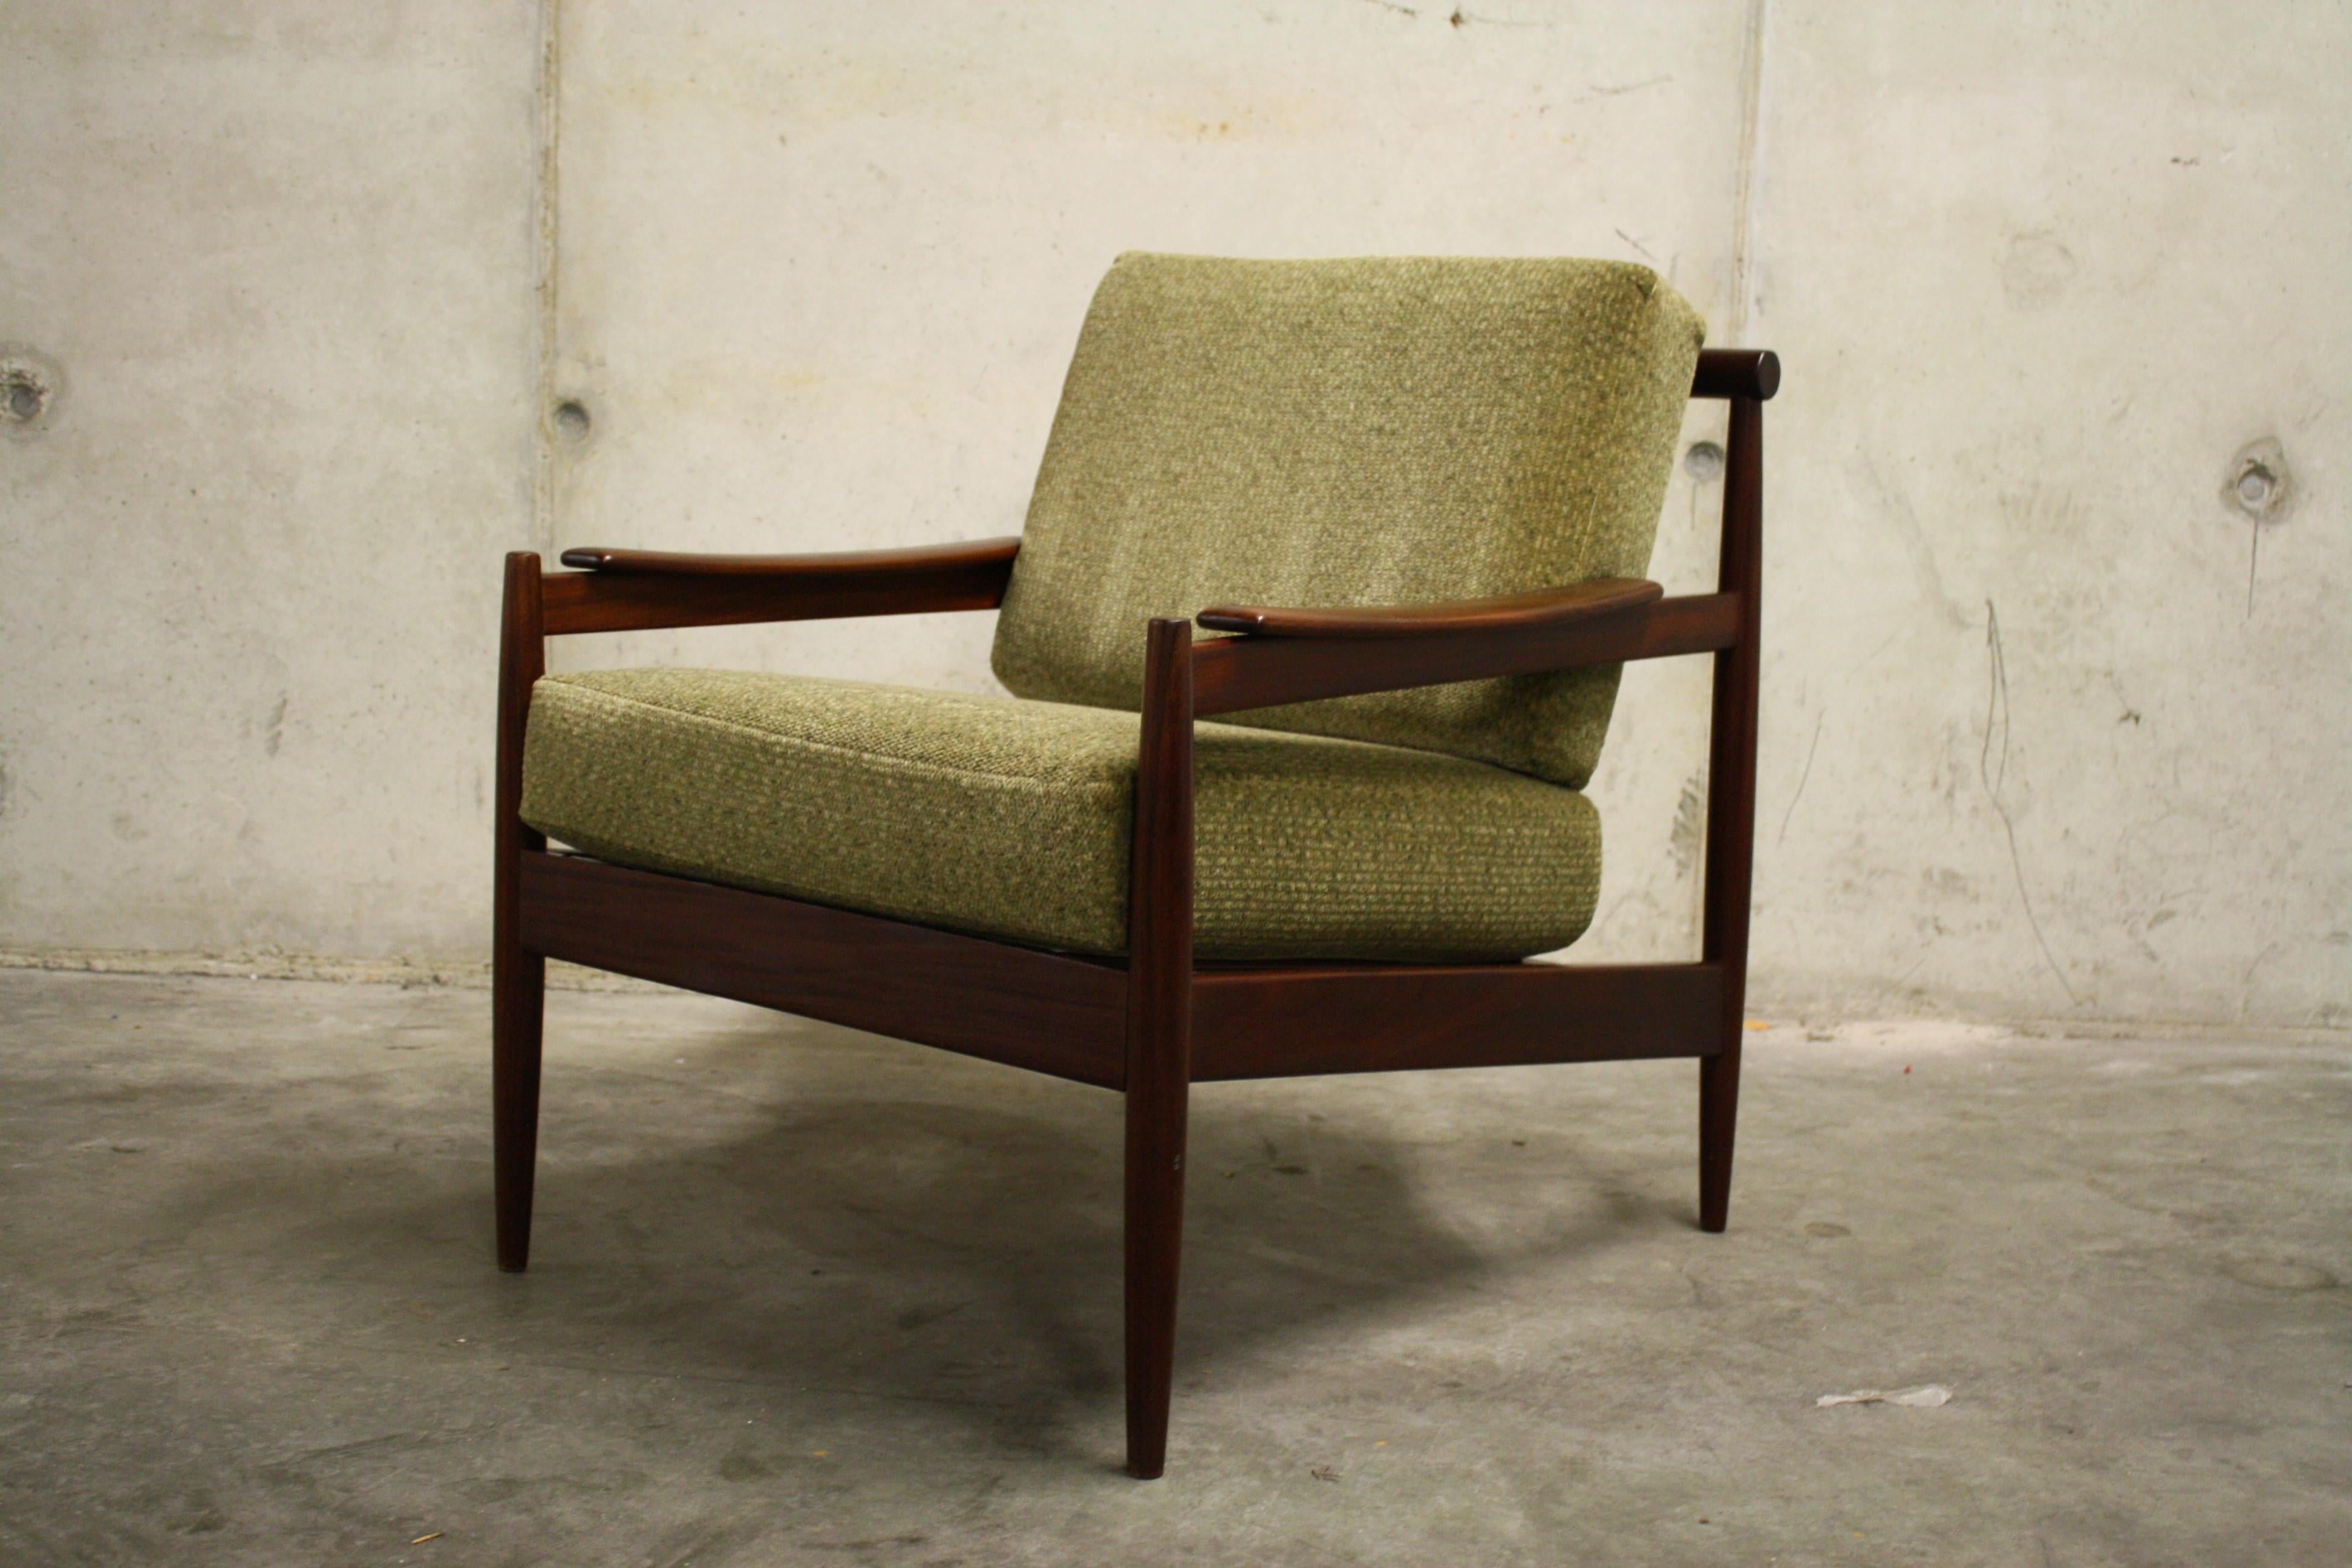 Midcentury Teak Wooden Scandinavian Lounge Chair, 1960s, Denmark 1